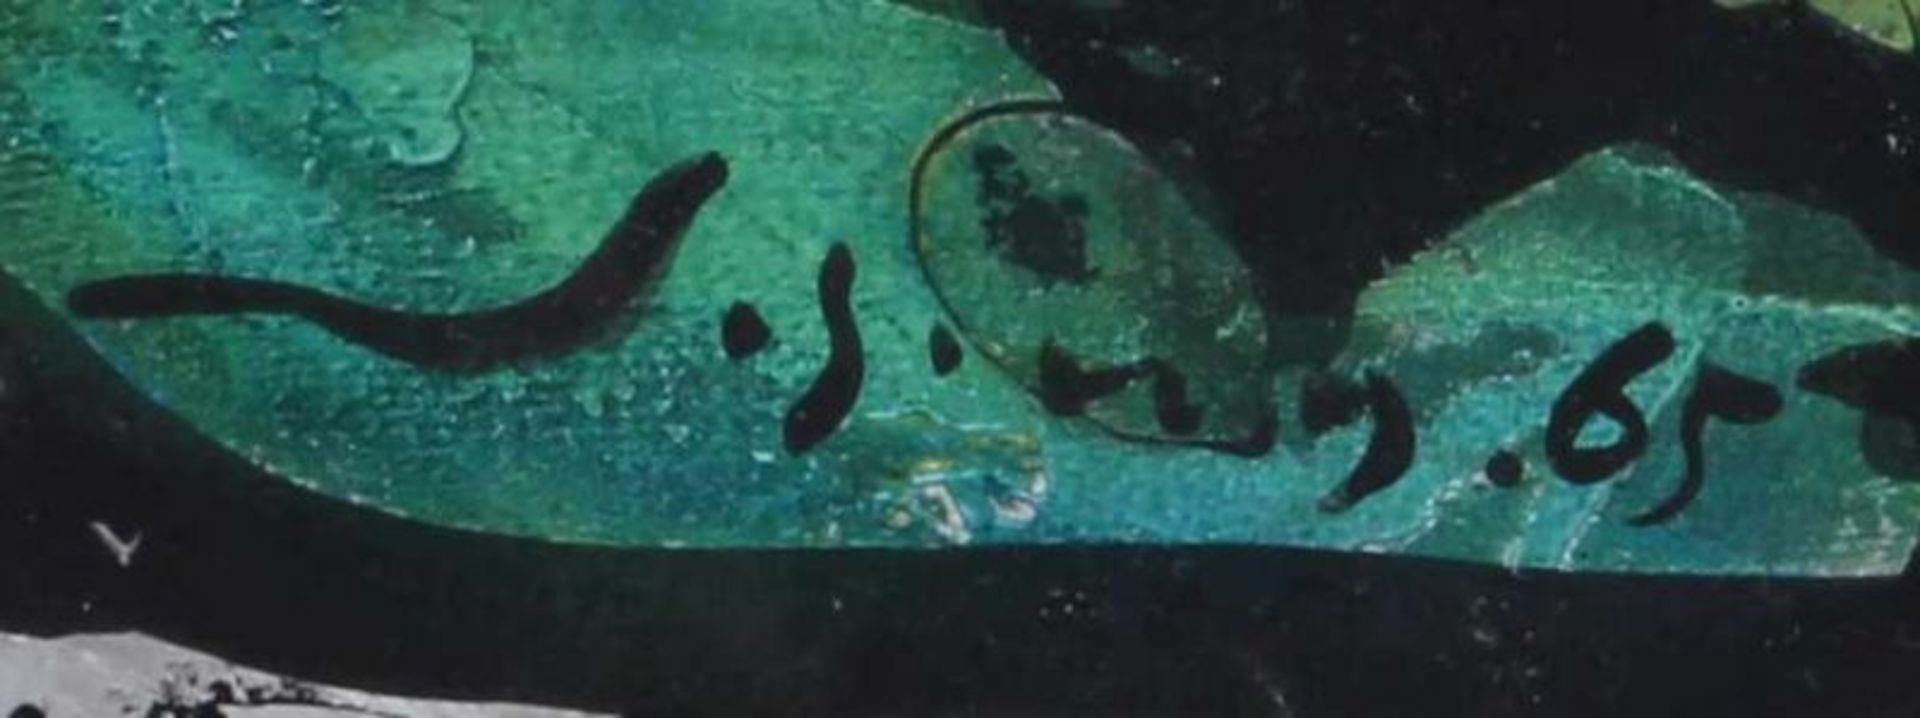 Gouache, "Der Flug", undeutlich signiert und datiert 65, 59 x 46 cm, unter Glas gerahmt 20.00 % - Image 3 of 3